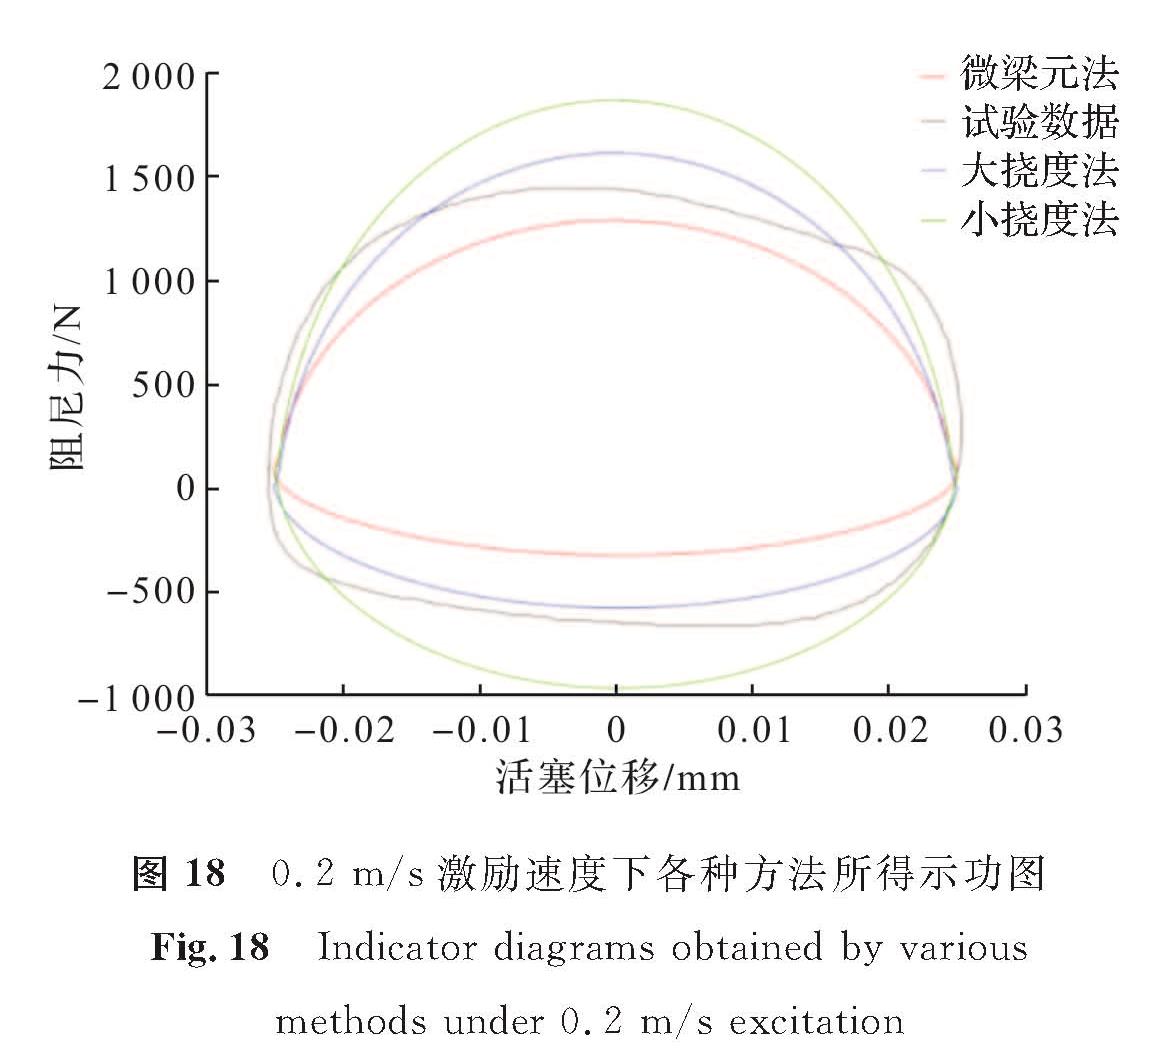 图 18 0.2 m/s激励速度下各种方法所得示功图<br/>Fig.18 Indicator diagrams obtained by various methods under 0.2 m/s excitation